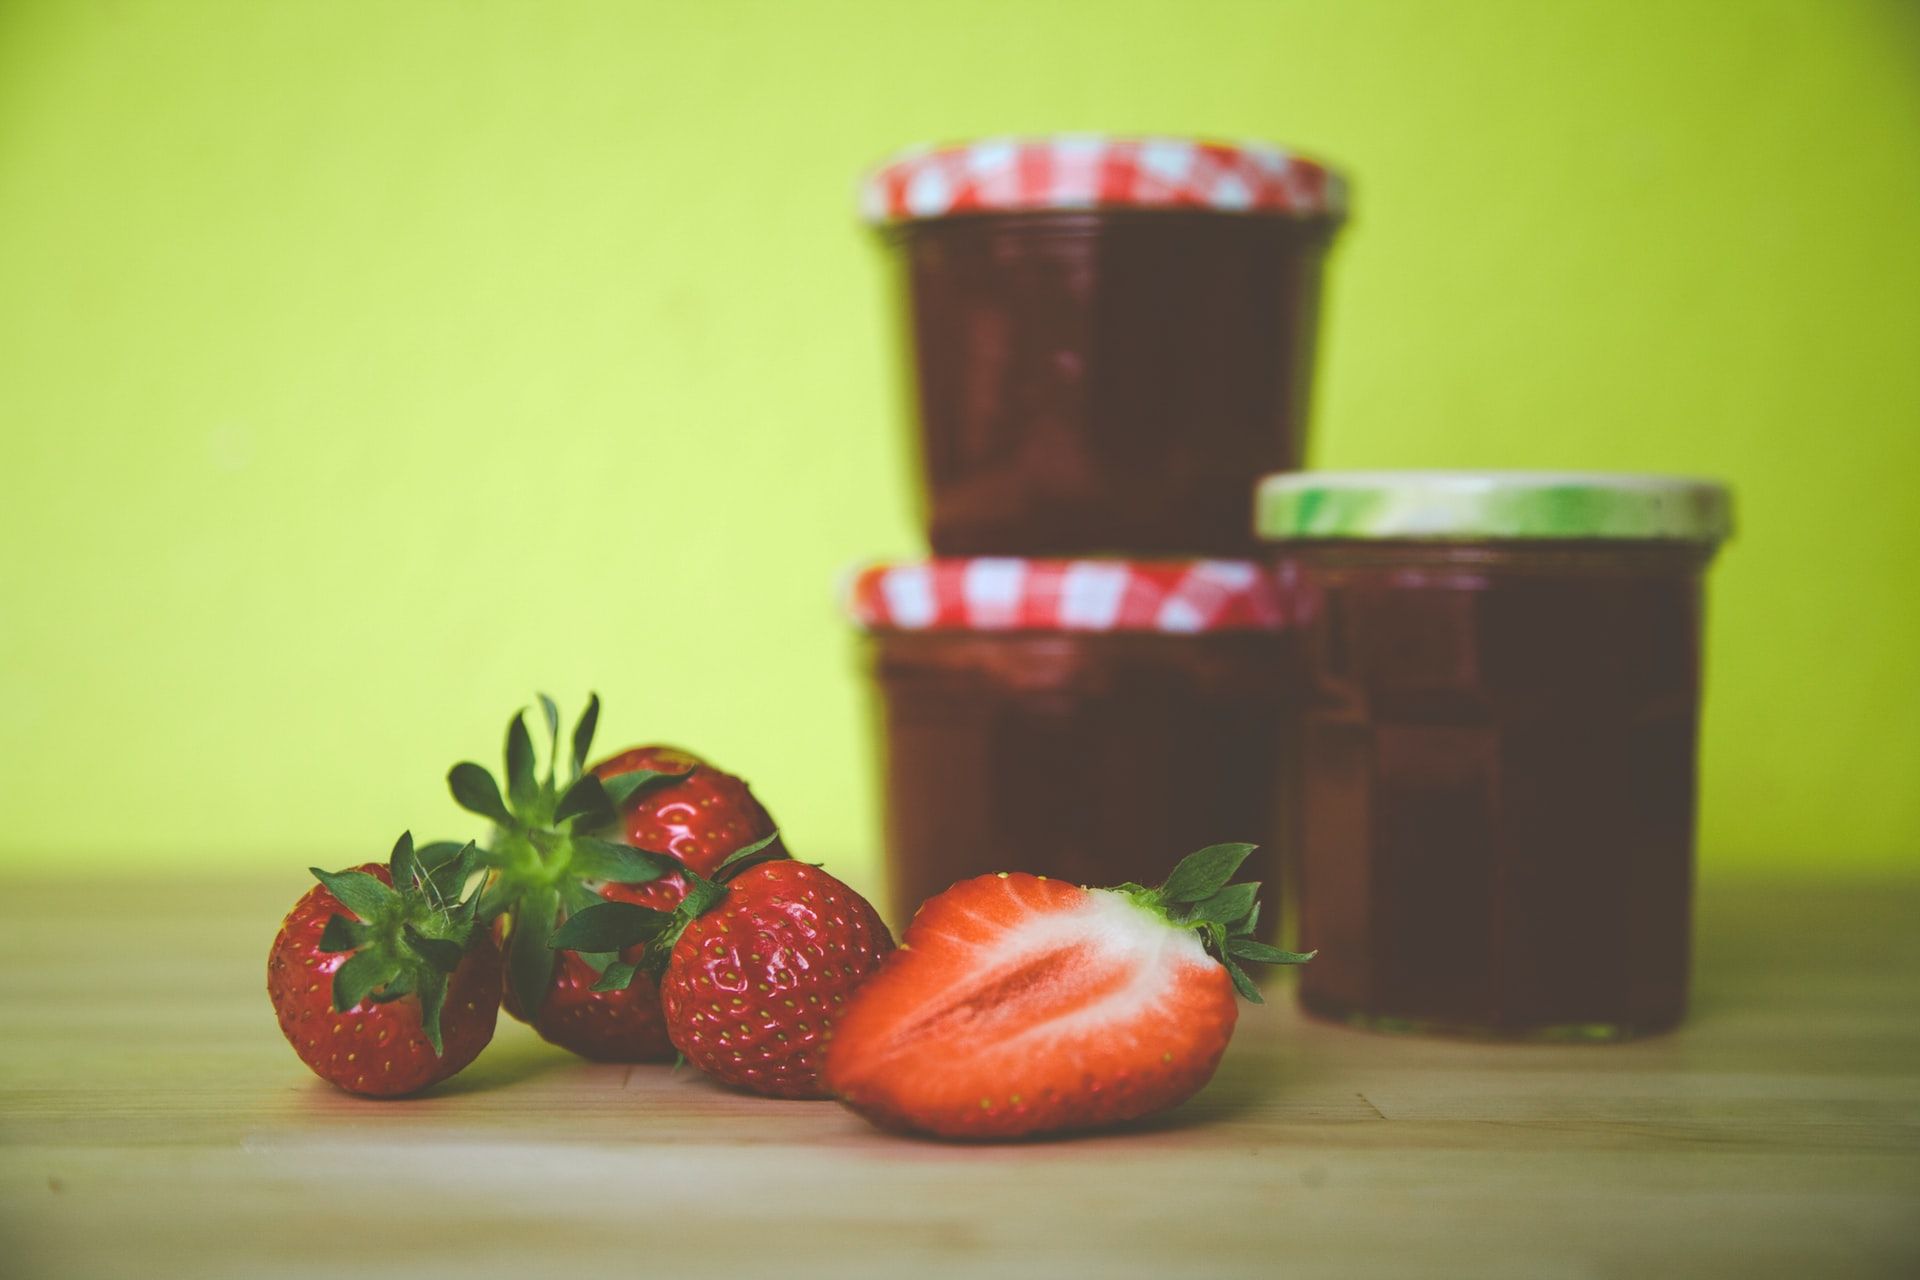 Berikut manfaat dan aneka resep buah strawberry yang segar dan kaya akan khasiatnya, penuh dengan vitamin